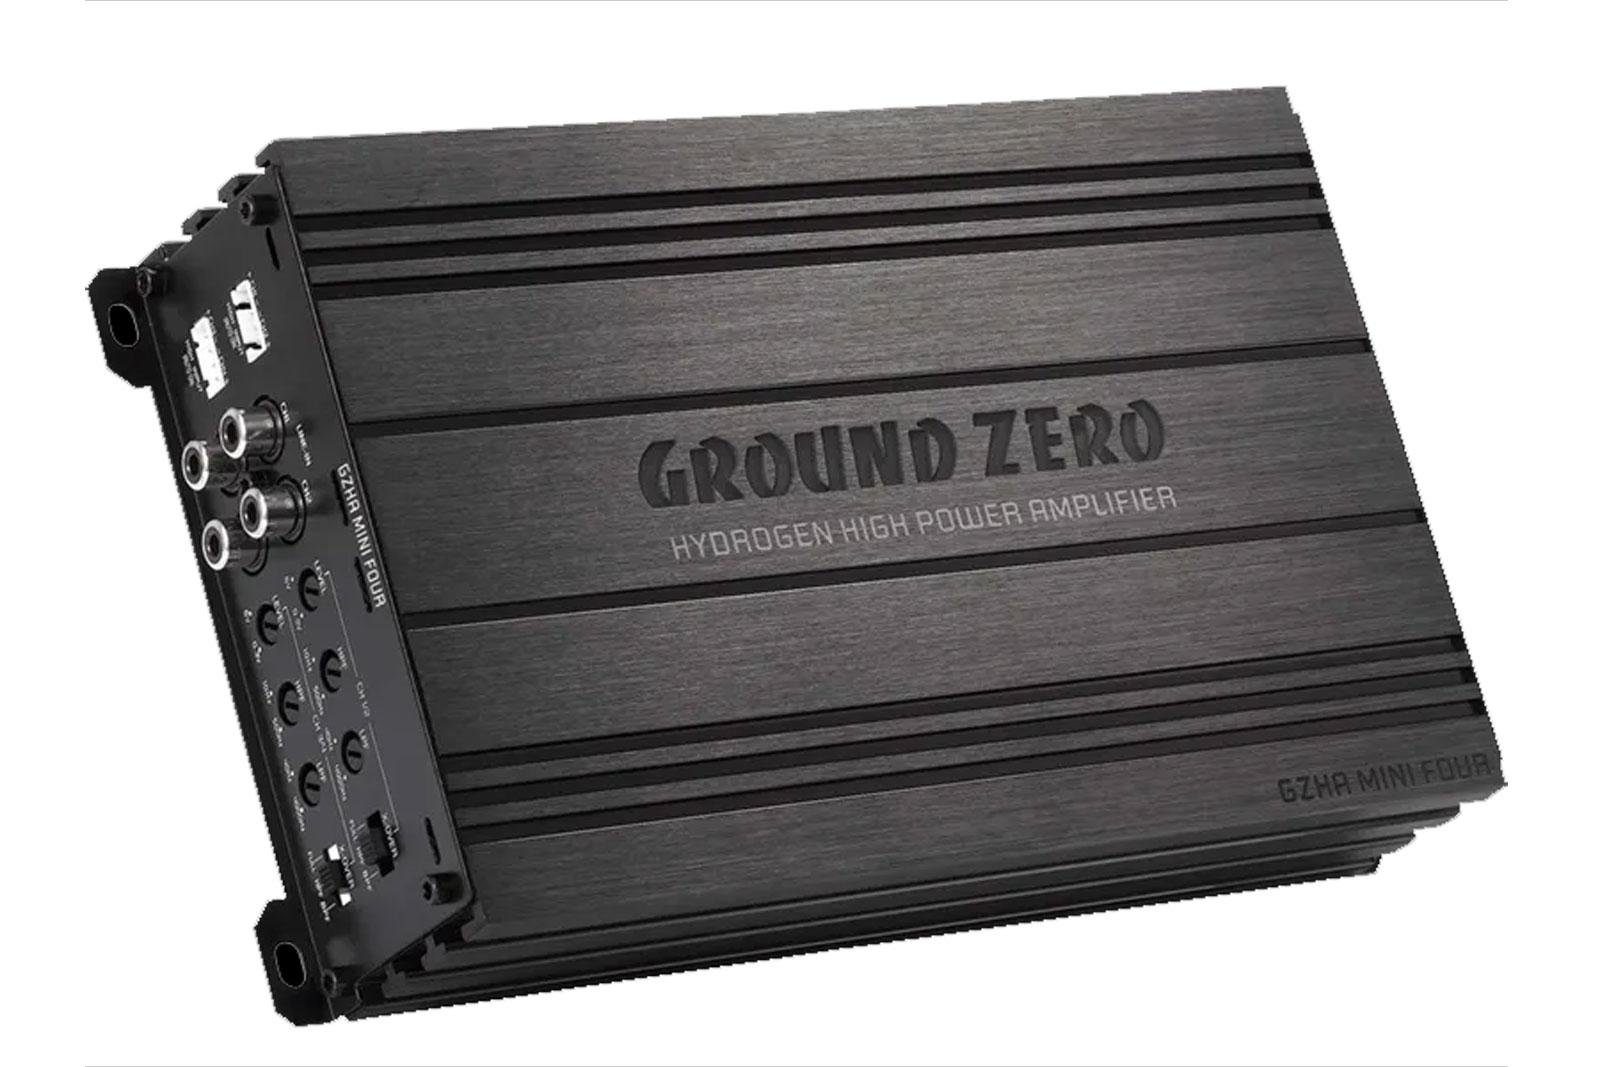 Kompaktverstärker Class Audioverstärker Auto GZHA D Zero 4-Kanal Ground MINI FOUR 640 Endstufe W